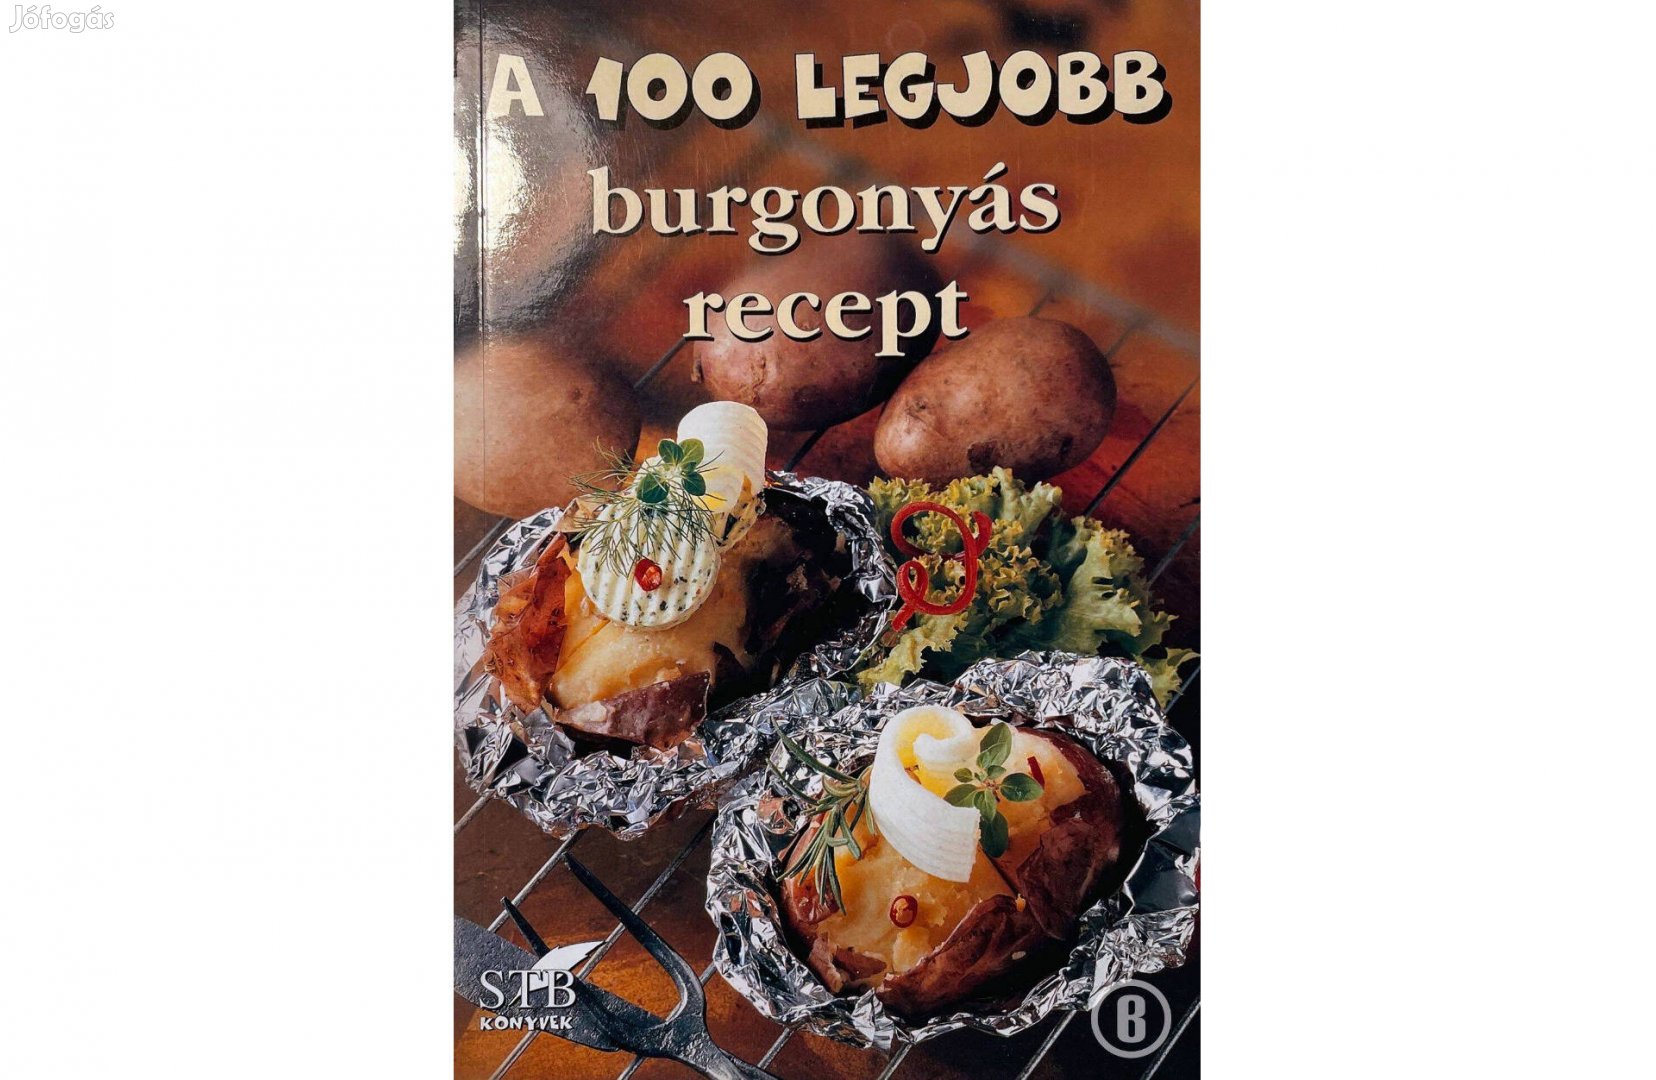 A 100 legjobb burgonyás recept (19. kötet / szerk. Toró Elza)